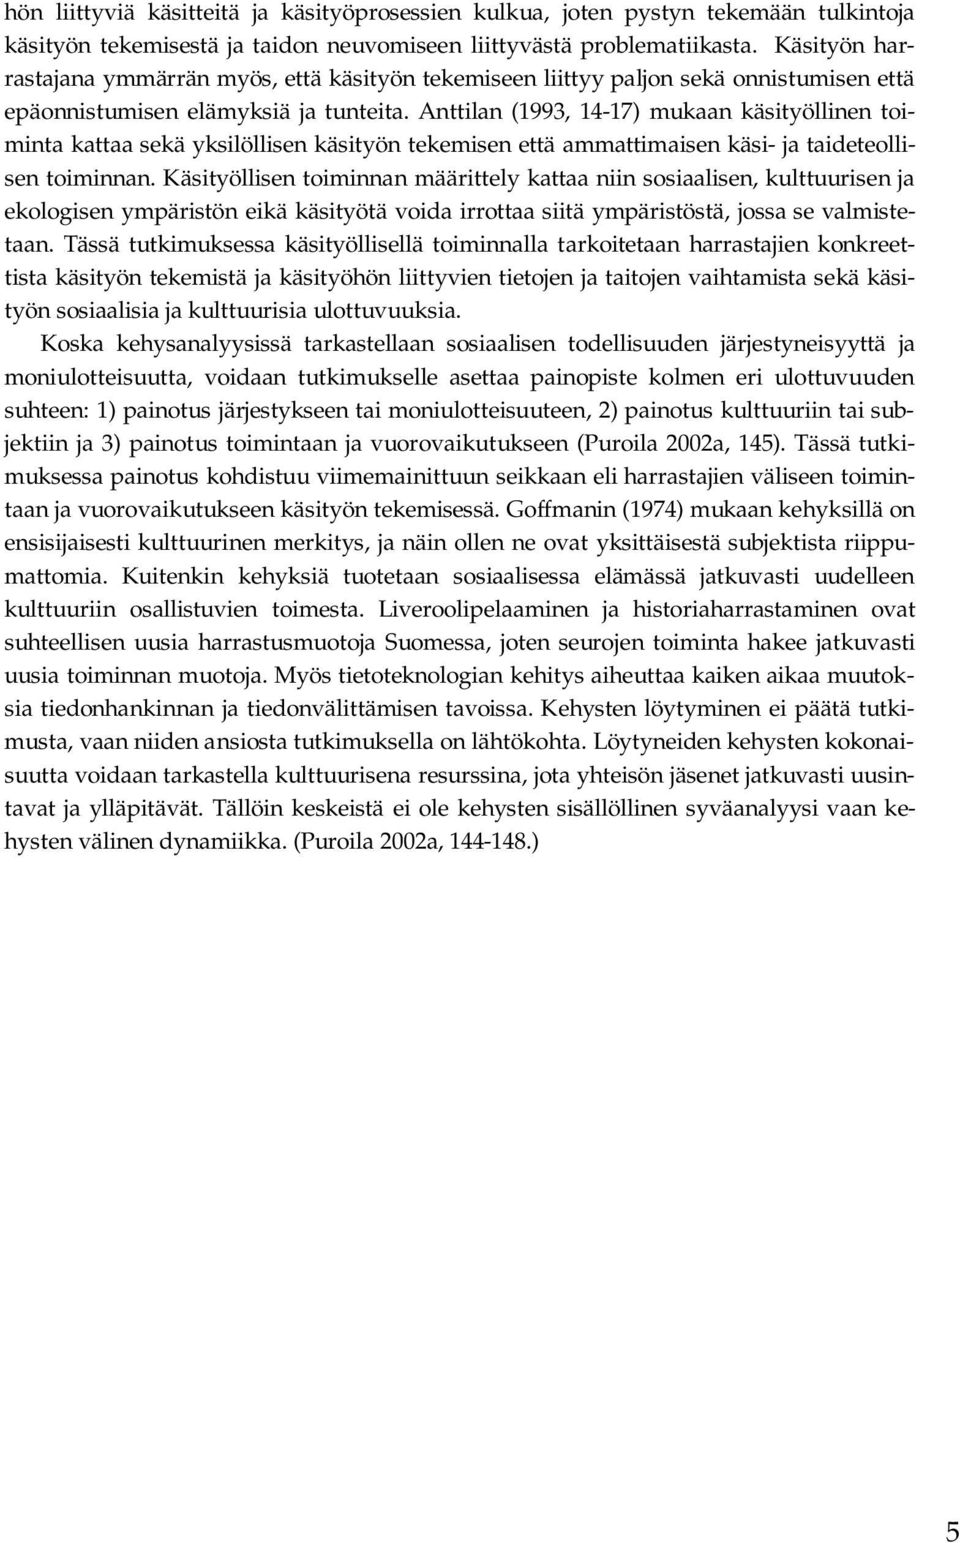 Anttilan (1993, 14-17) mukaan käsityöllinen toiminta kattaa sekä yksilöllisen käsityön tekemisen että ammattimaisen käsi- ja taideteollisen toiminnan.